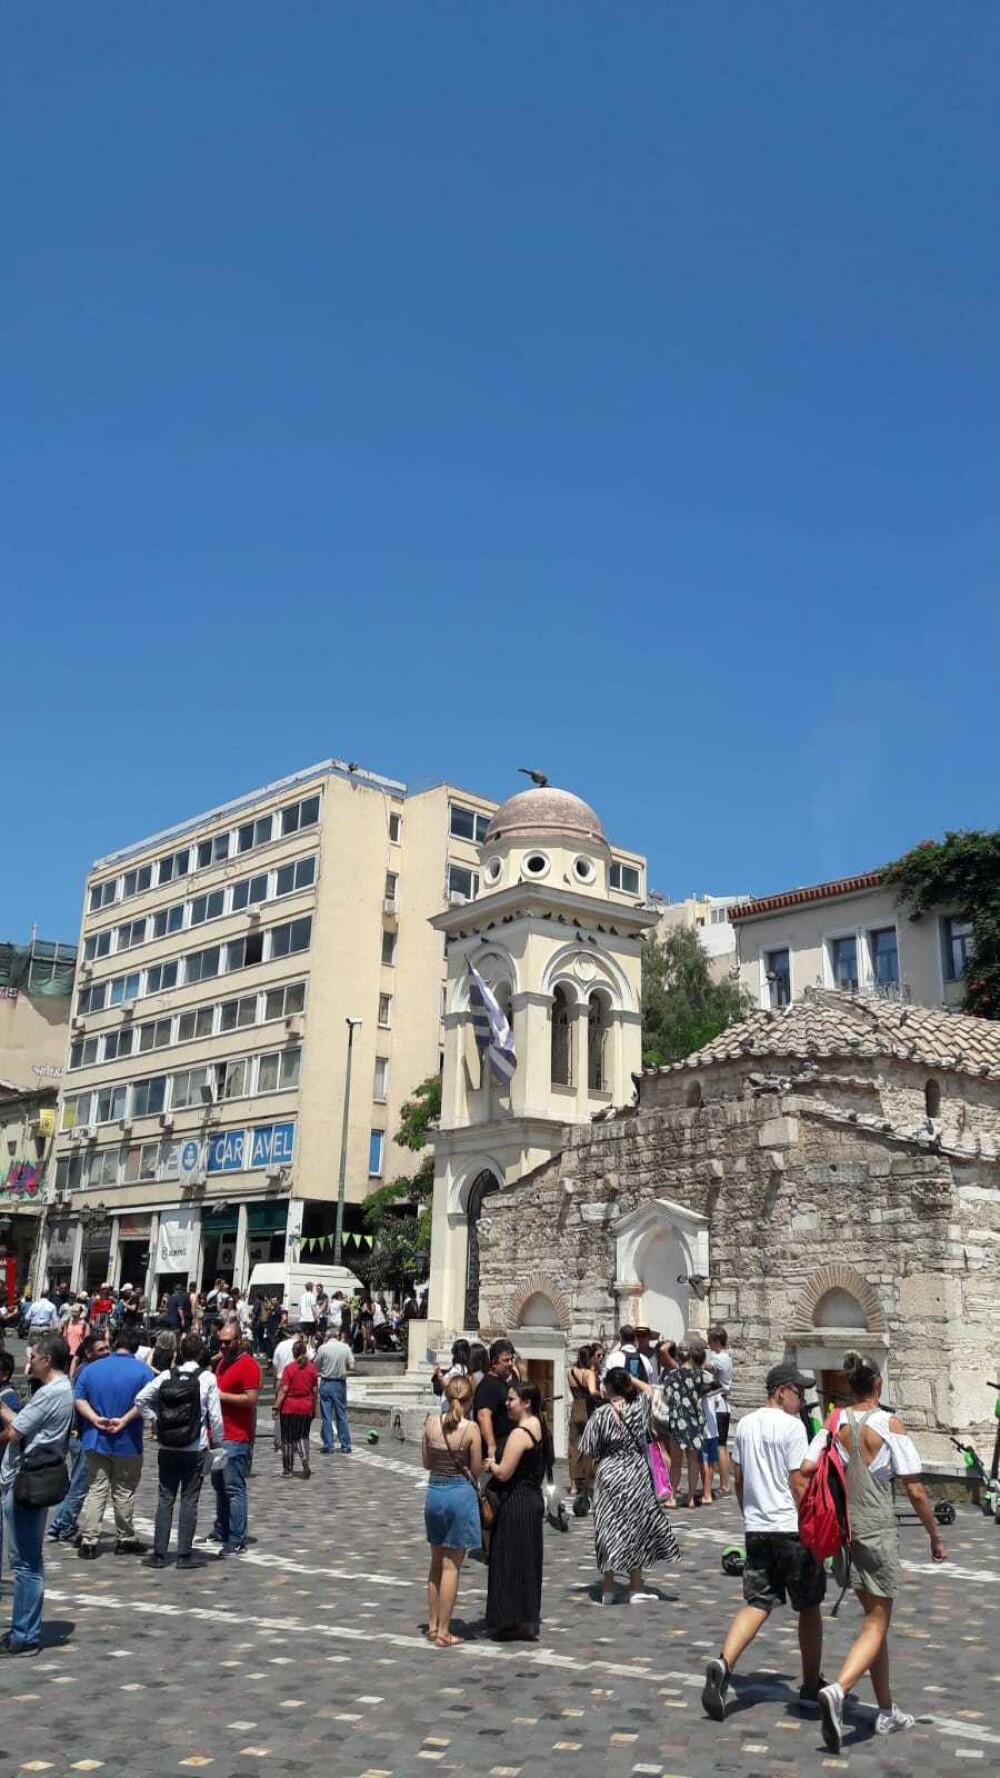 Cutremurul din Grecia a creat panică printre turiști. IMAGINI din timpul seismului - Imaginea 5